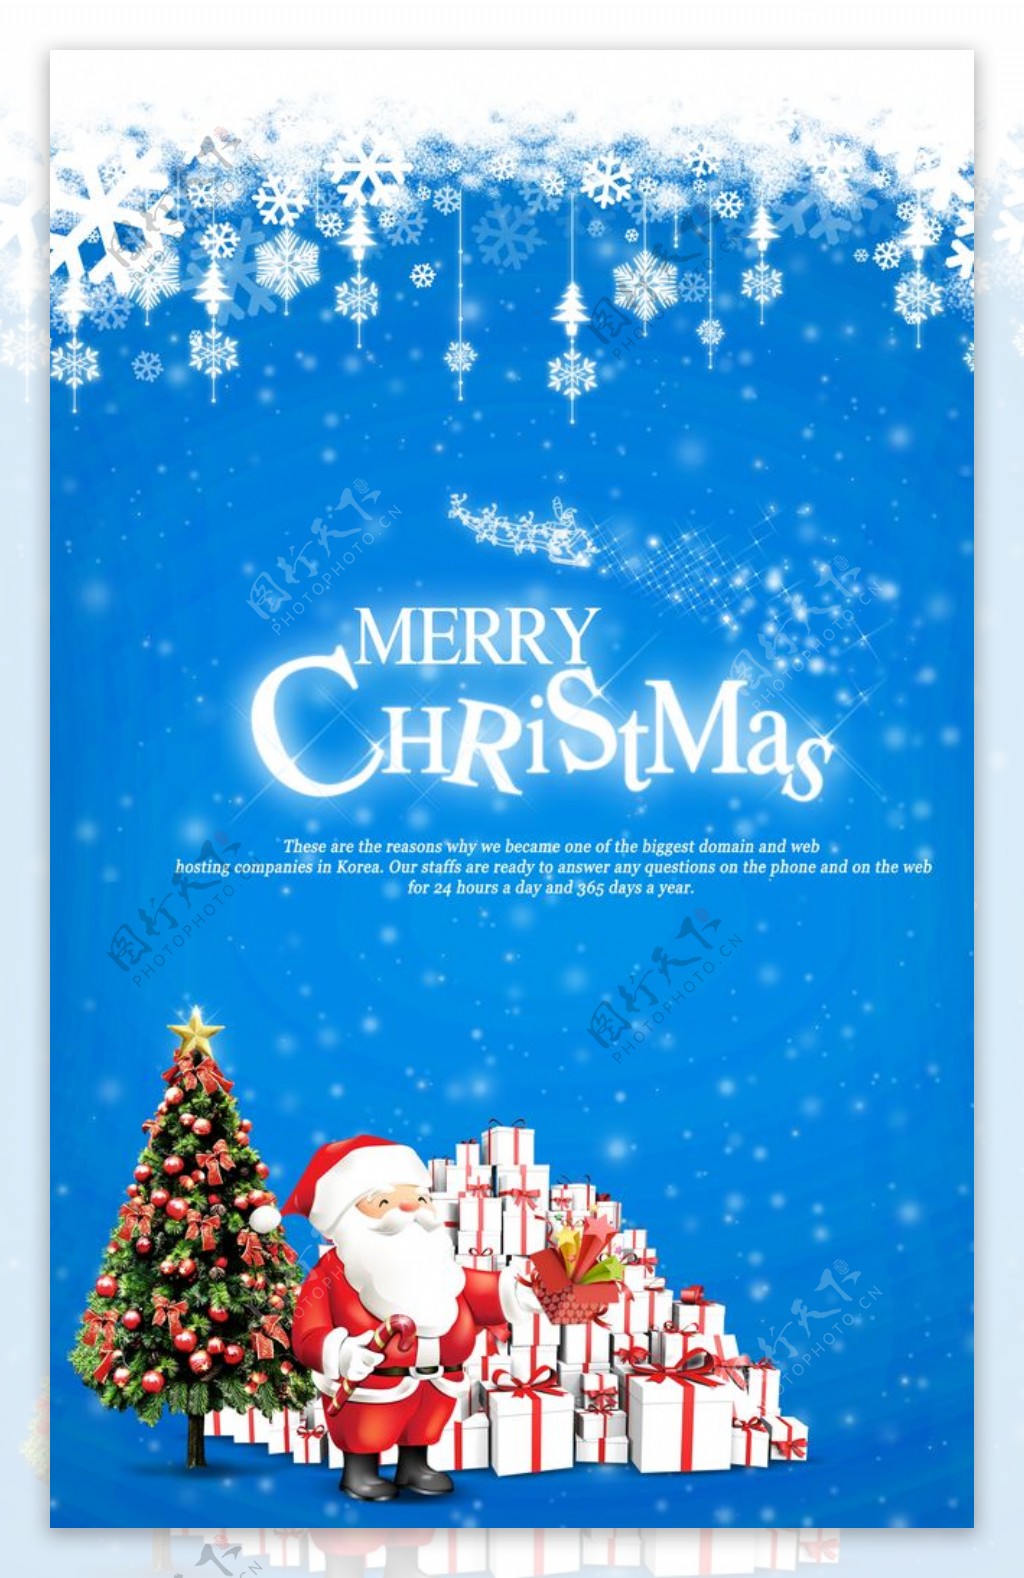 圣诞老人送礼物场景宣传文案海报